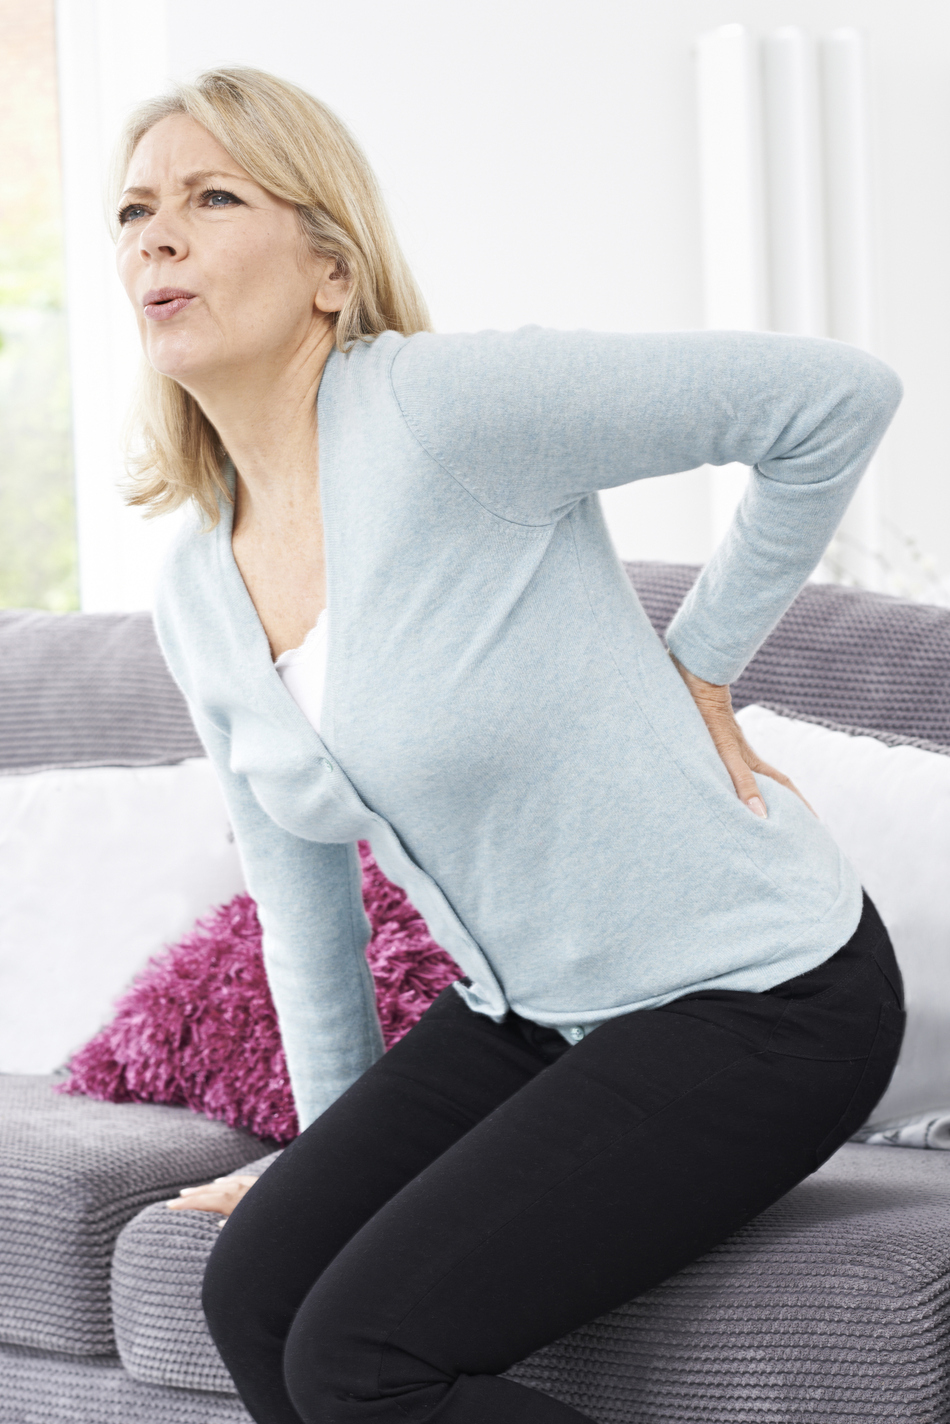 ER or Not: Severe Back Pain